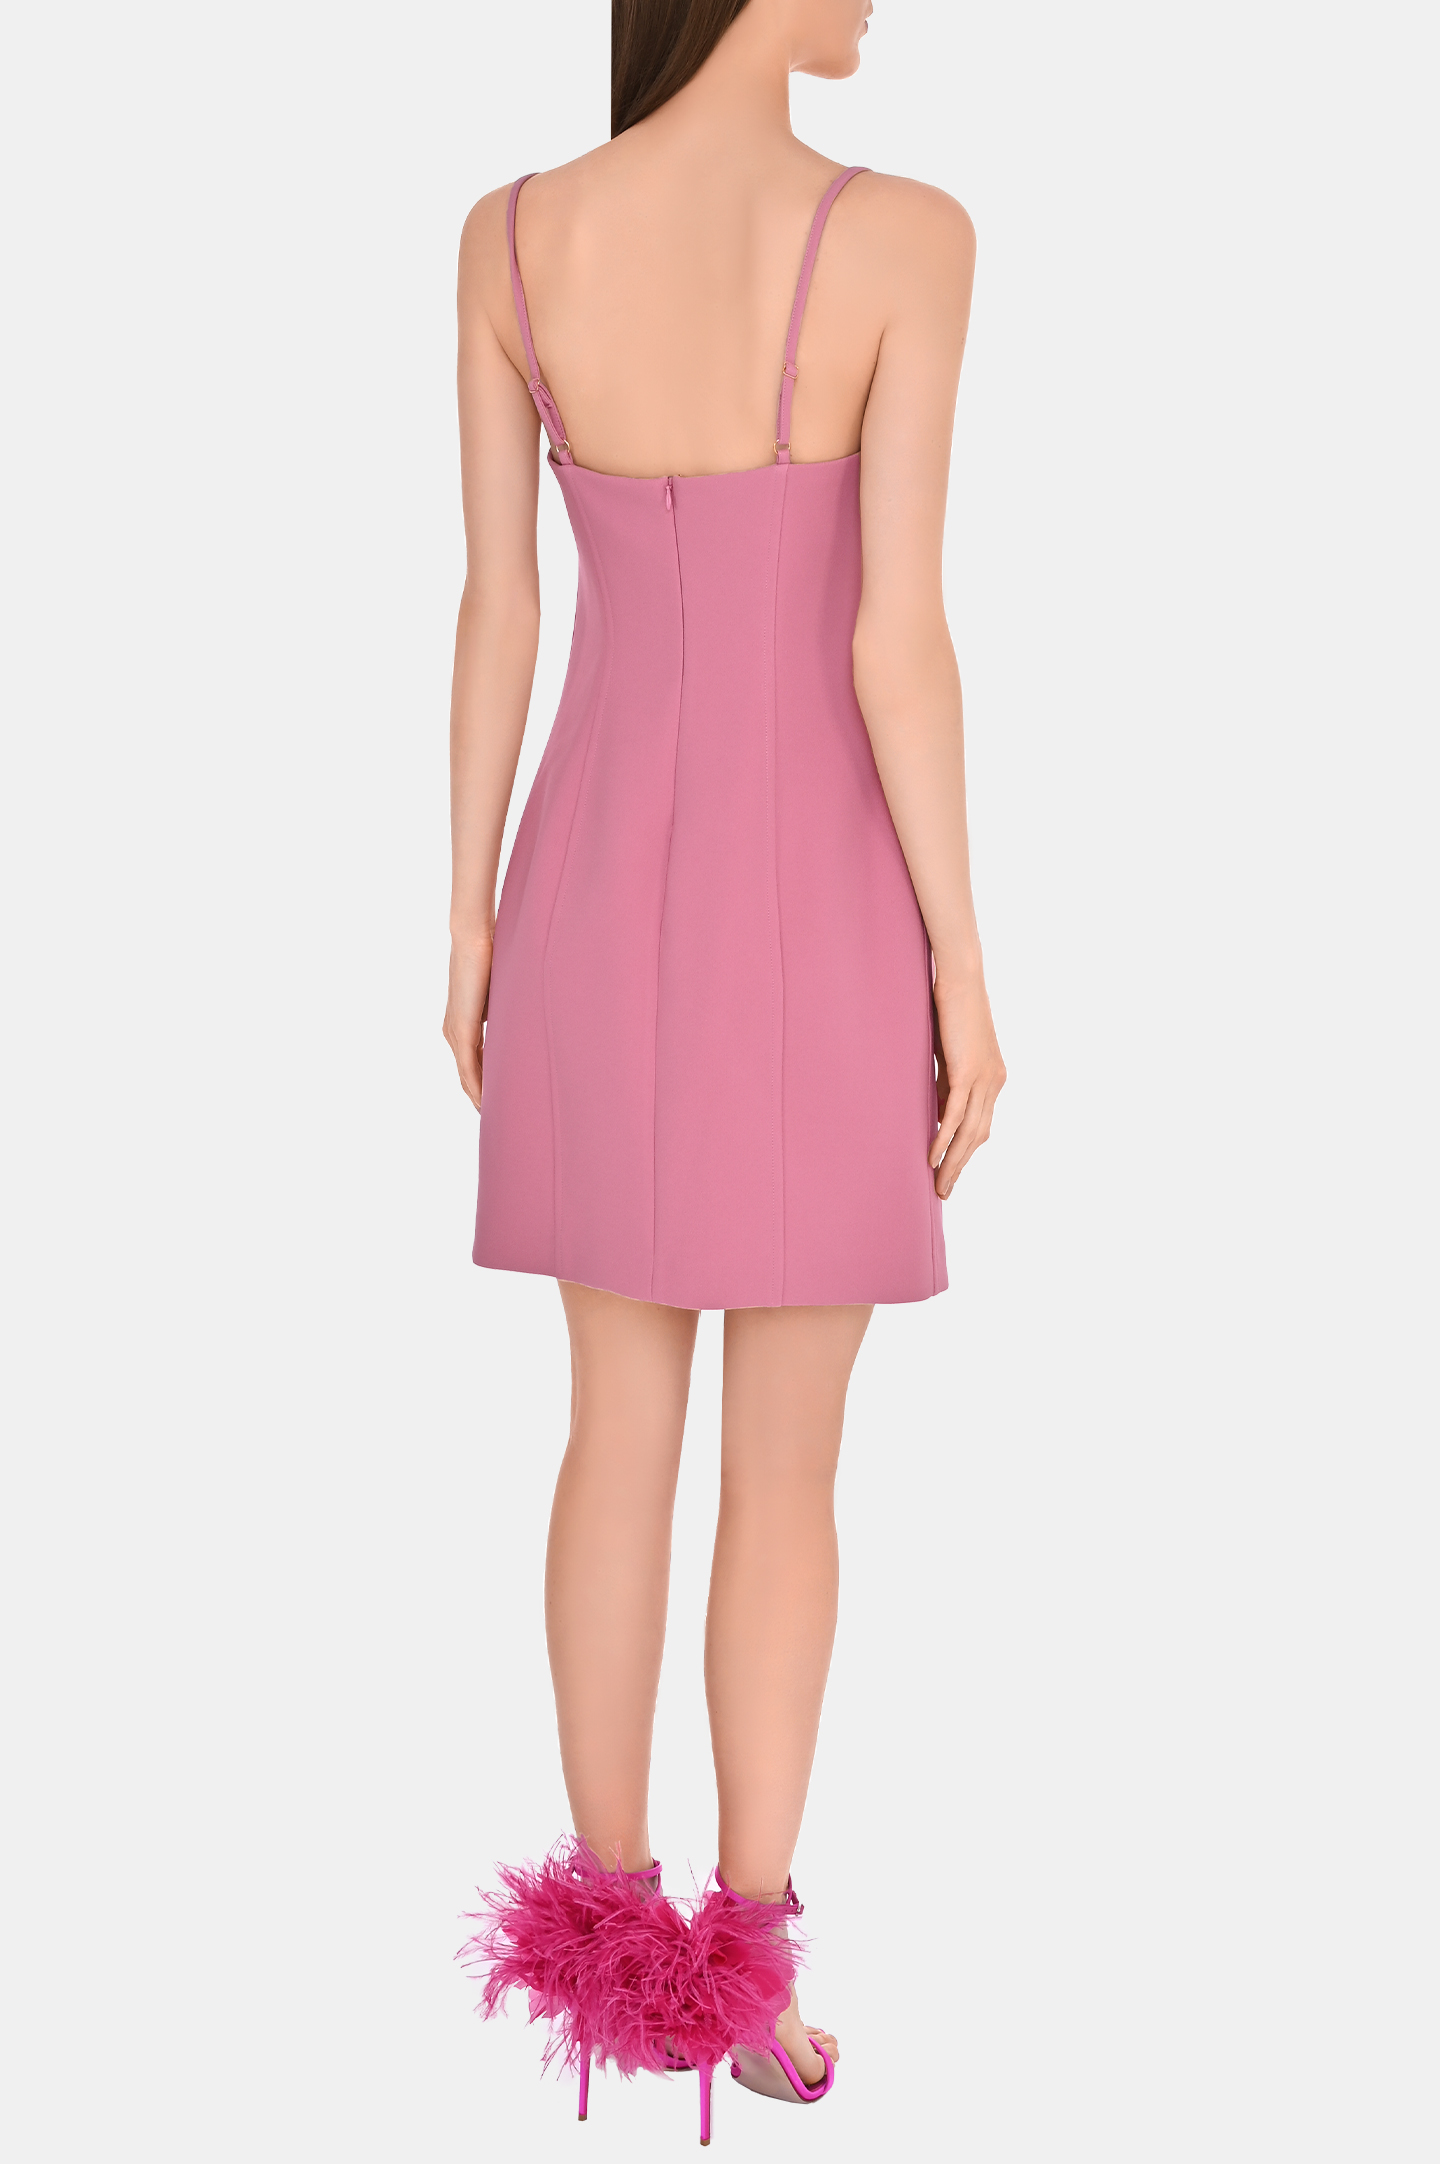 Платье BLUMARINE P32 2A305A, цвет: Розовый, Женский